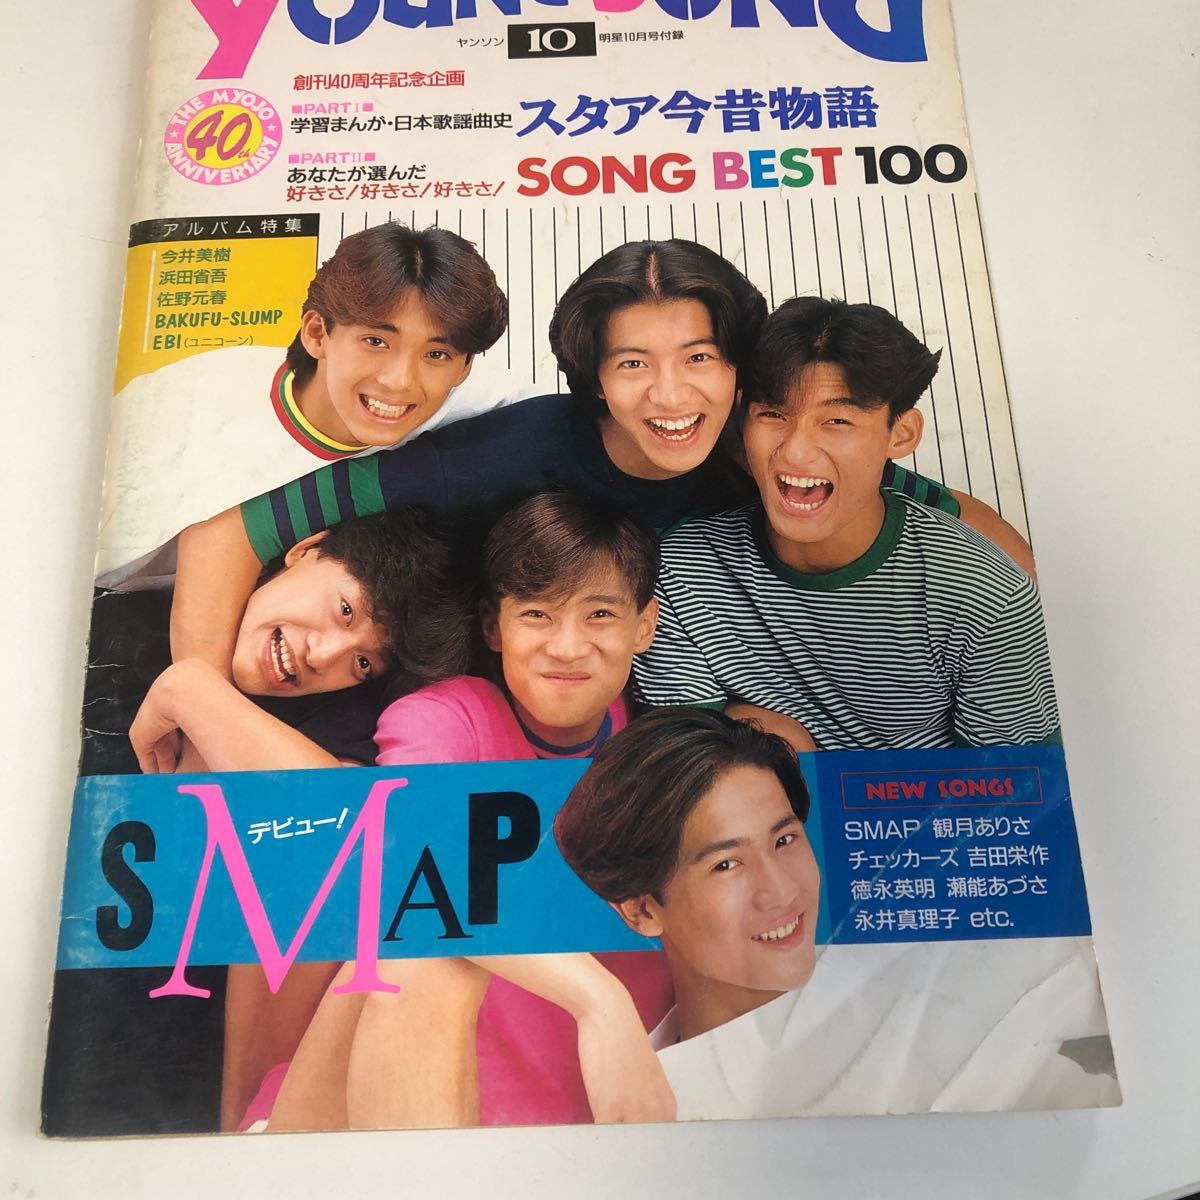 m8a-008 ヤングソング Young song SMAP 1991 10 6人 明星10月号付録 芸能人 アイドル 歌手 女性ボーカル グループ エンターテイメント_画像1